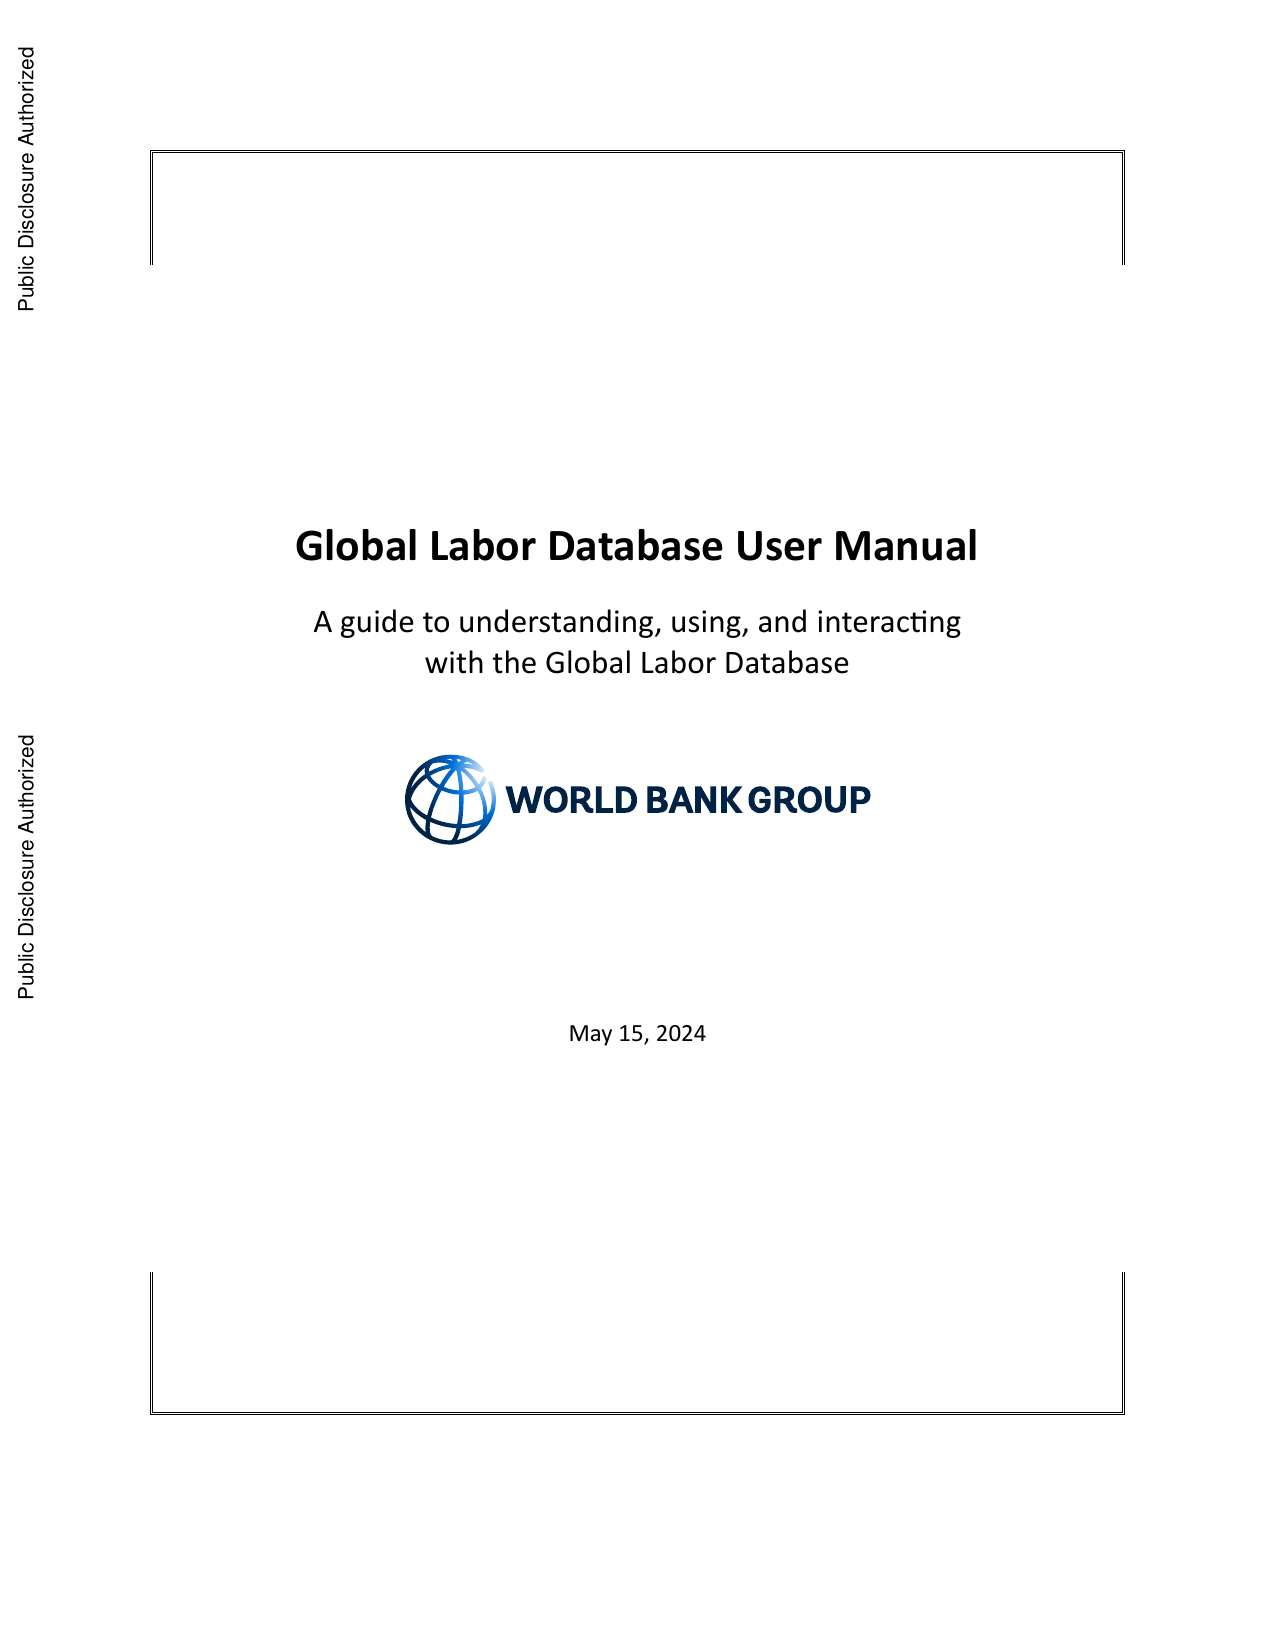 世界银行-全球劳动力数据库用户手册：全球劳动力数据库的理解、使用和交互指南（英）.pdf